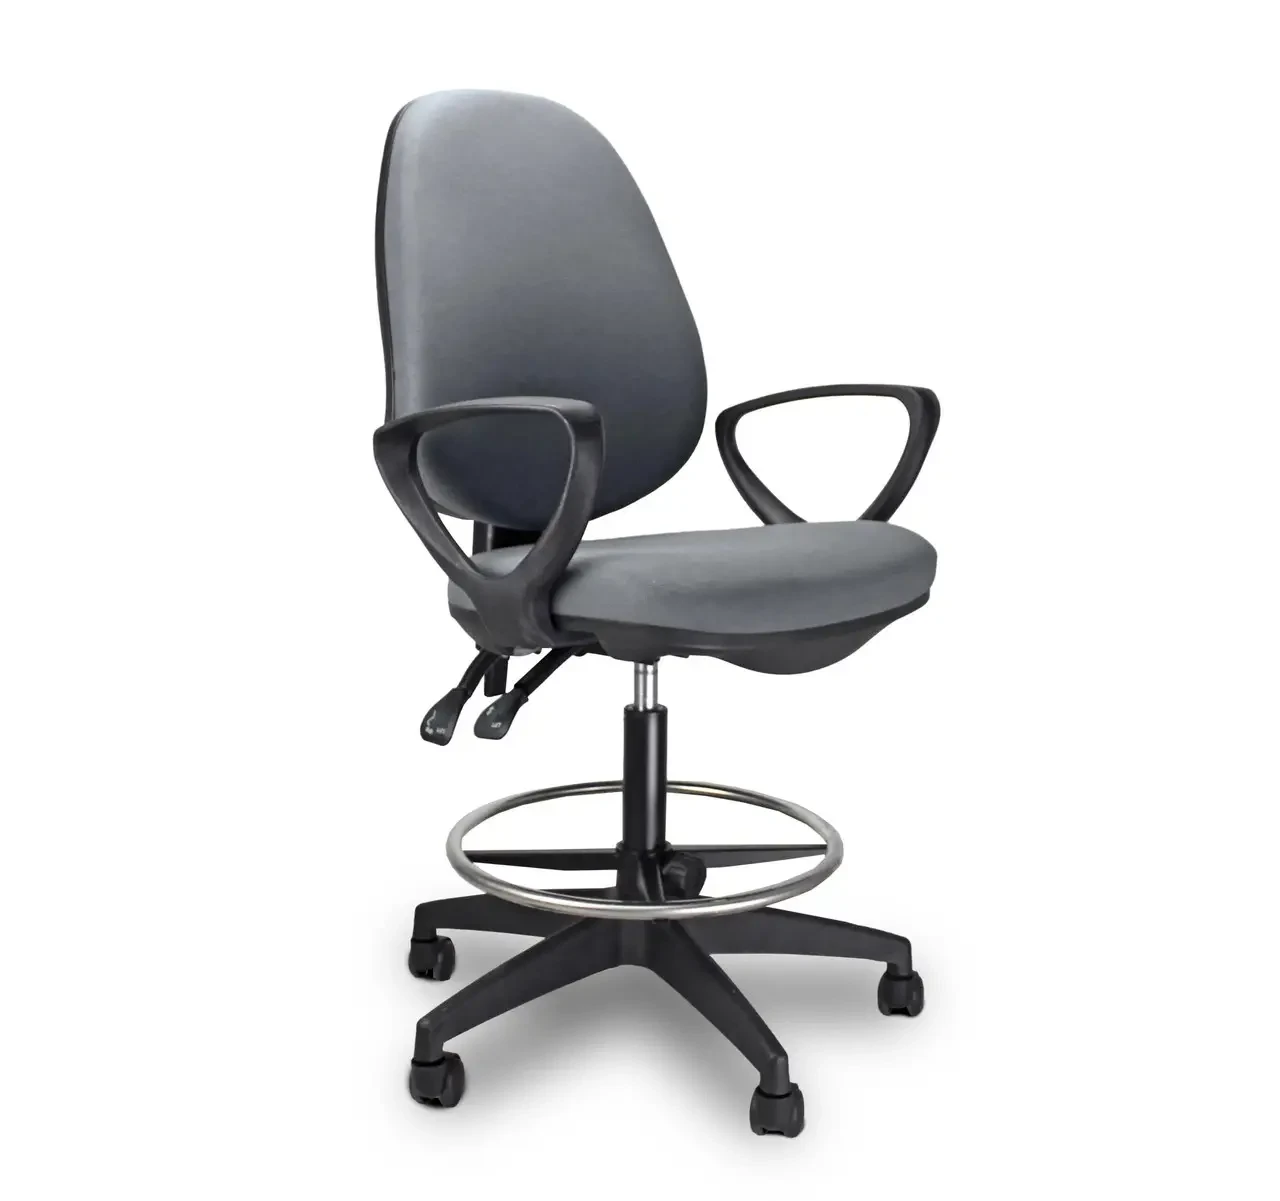 Крісло офісне JS Argo Ring комп'ютерне робоче для персоналу офісу домуB_2264